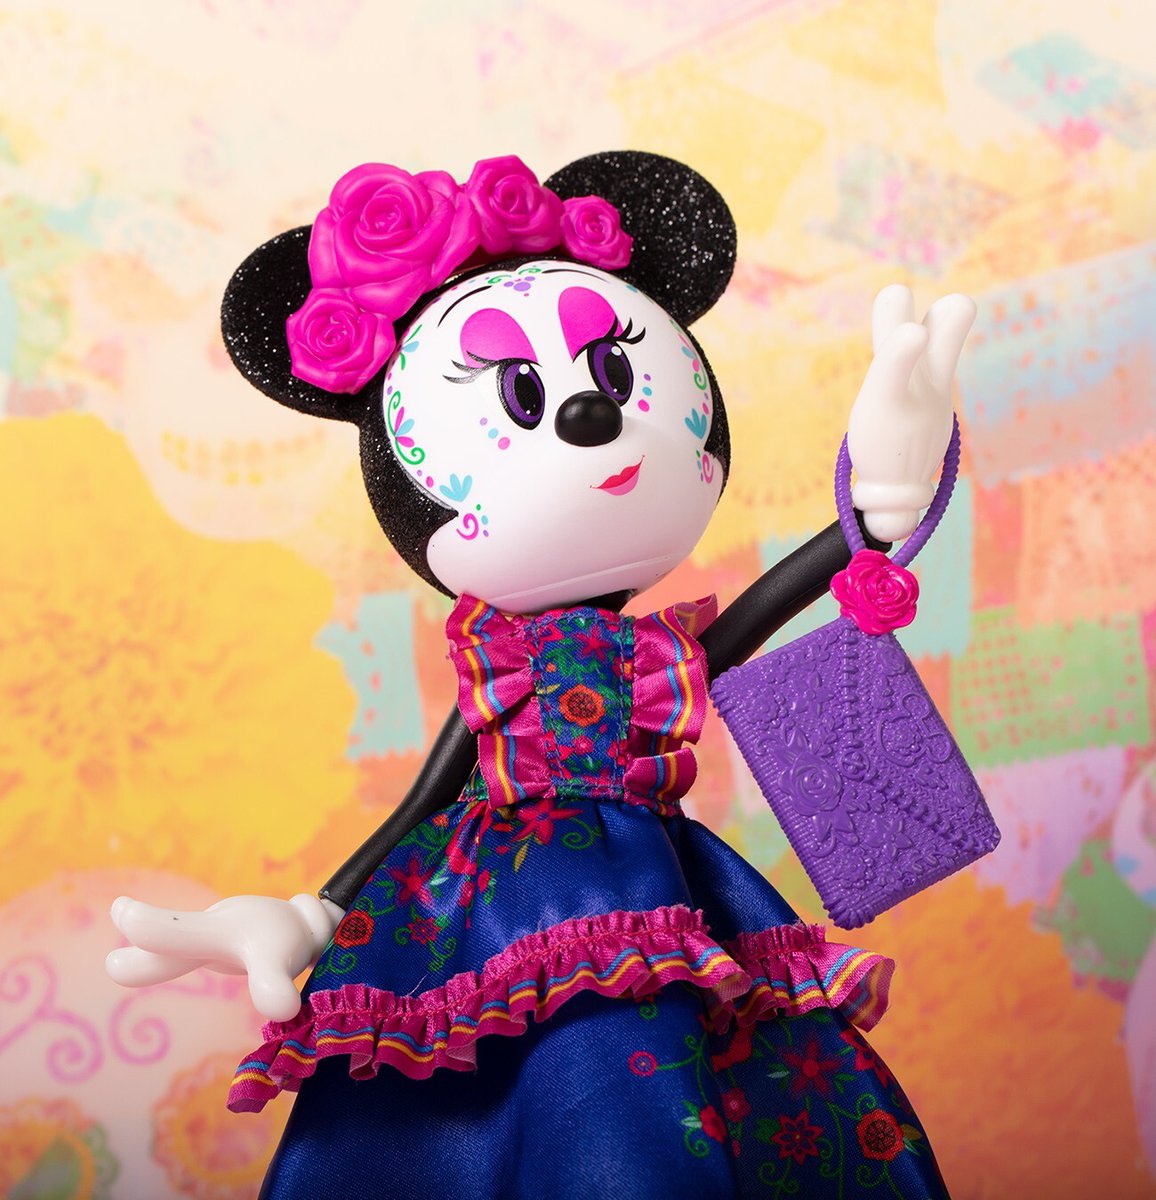 メキシコ大使館 ディズニーが メキシコ限定のミニーマウス人形をリリース この カトリーナ 骸骨の貴婦人 ミニーは11月初旬に行われるメキシコの伝統行事 死者の日 を記念して発売されました ディズニーによるとメキシコ人デザイナーを起用